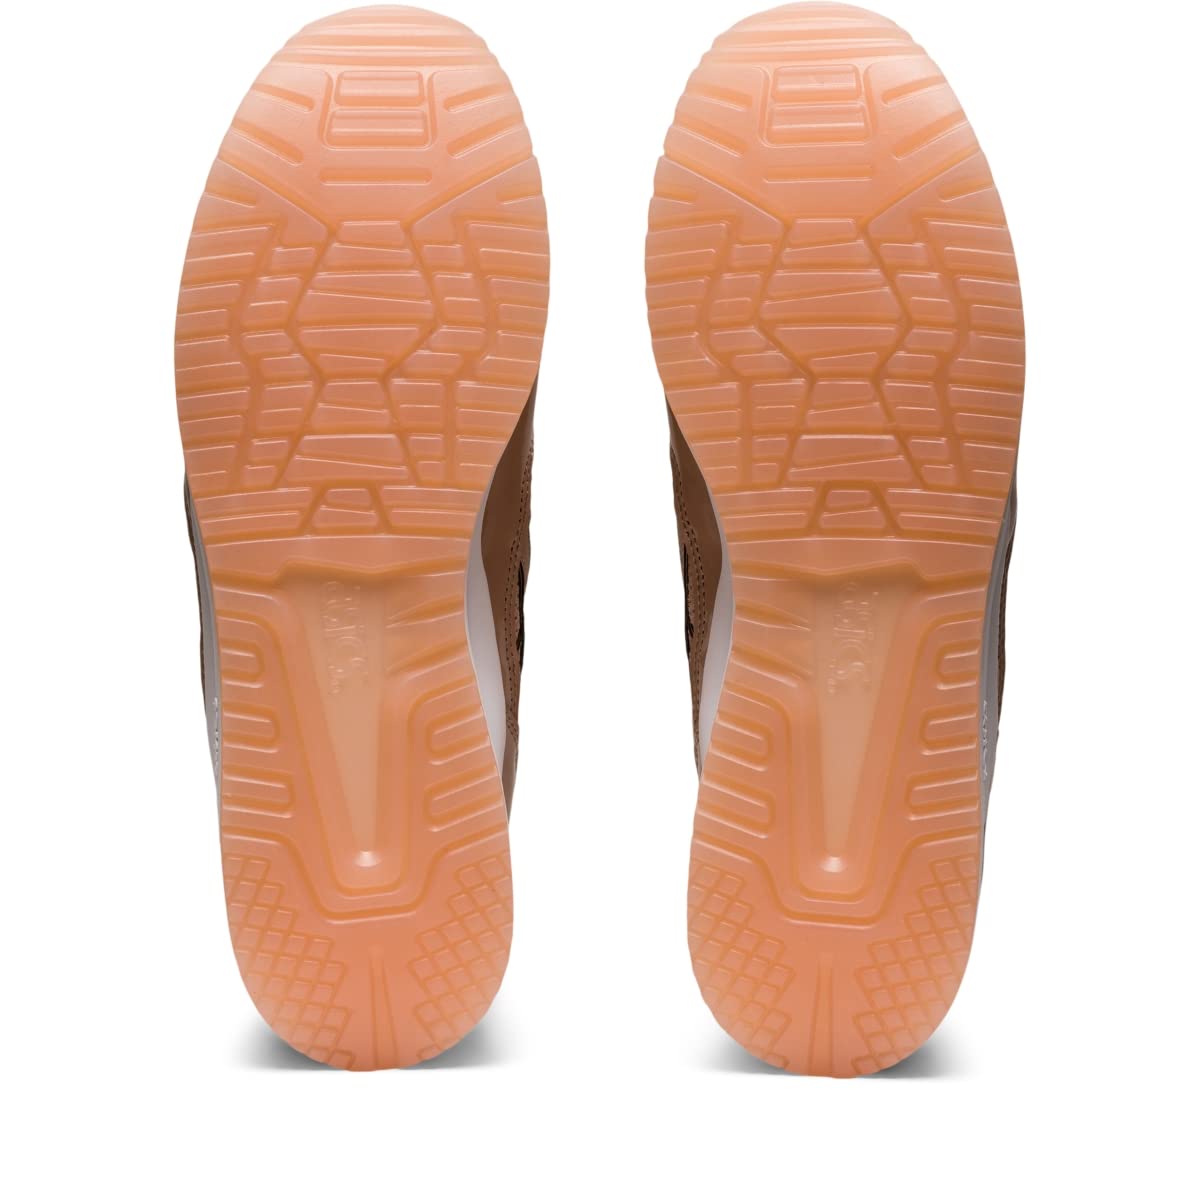 ASICS Men's Gel-Lyte III OG Sportstyle Shoes, 10.0, Dusty Steppe/Dusty Steppe